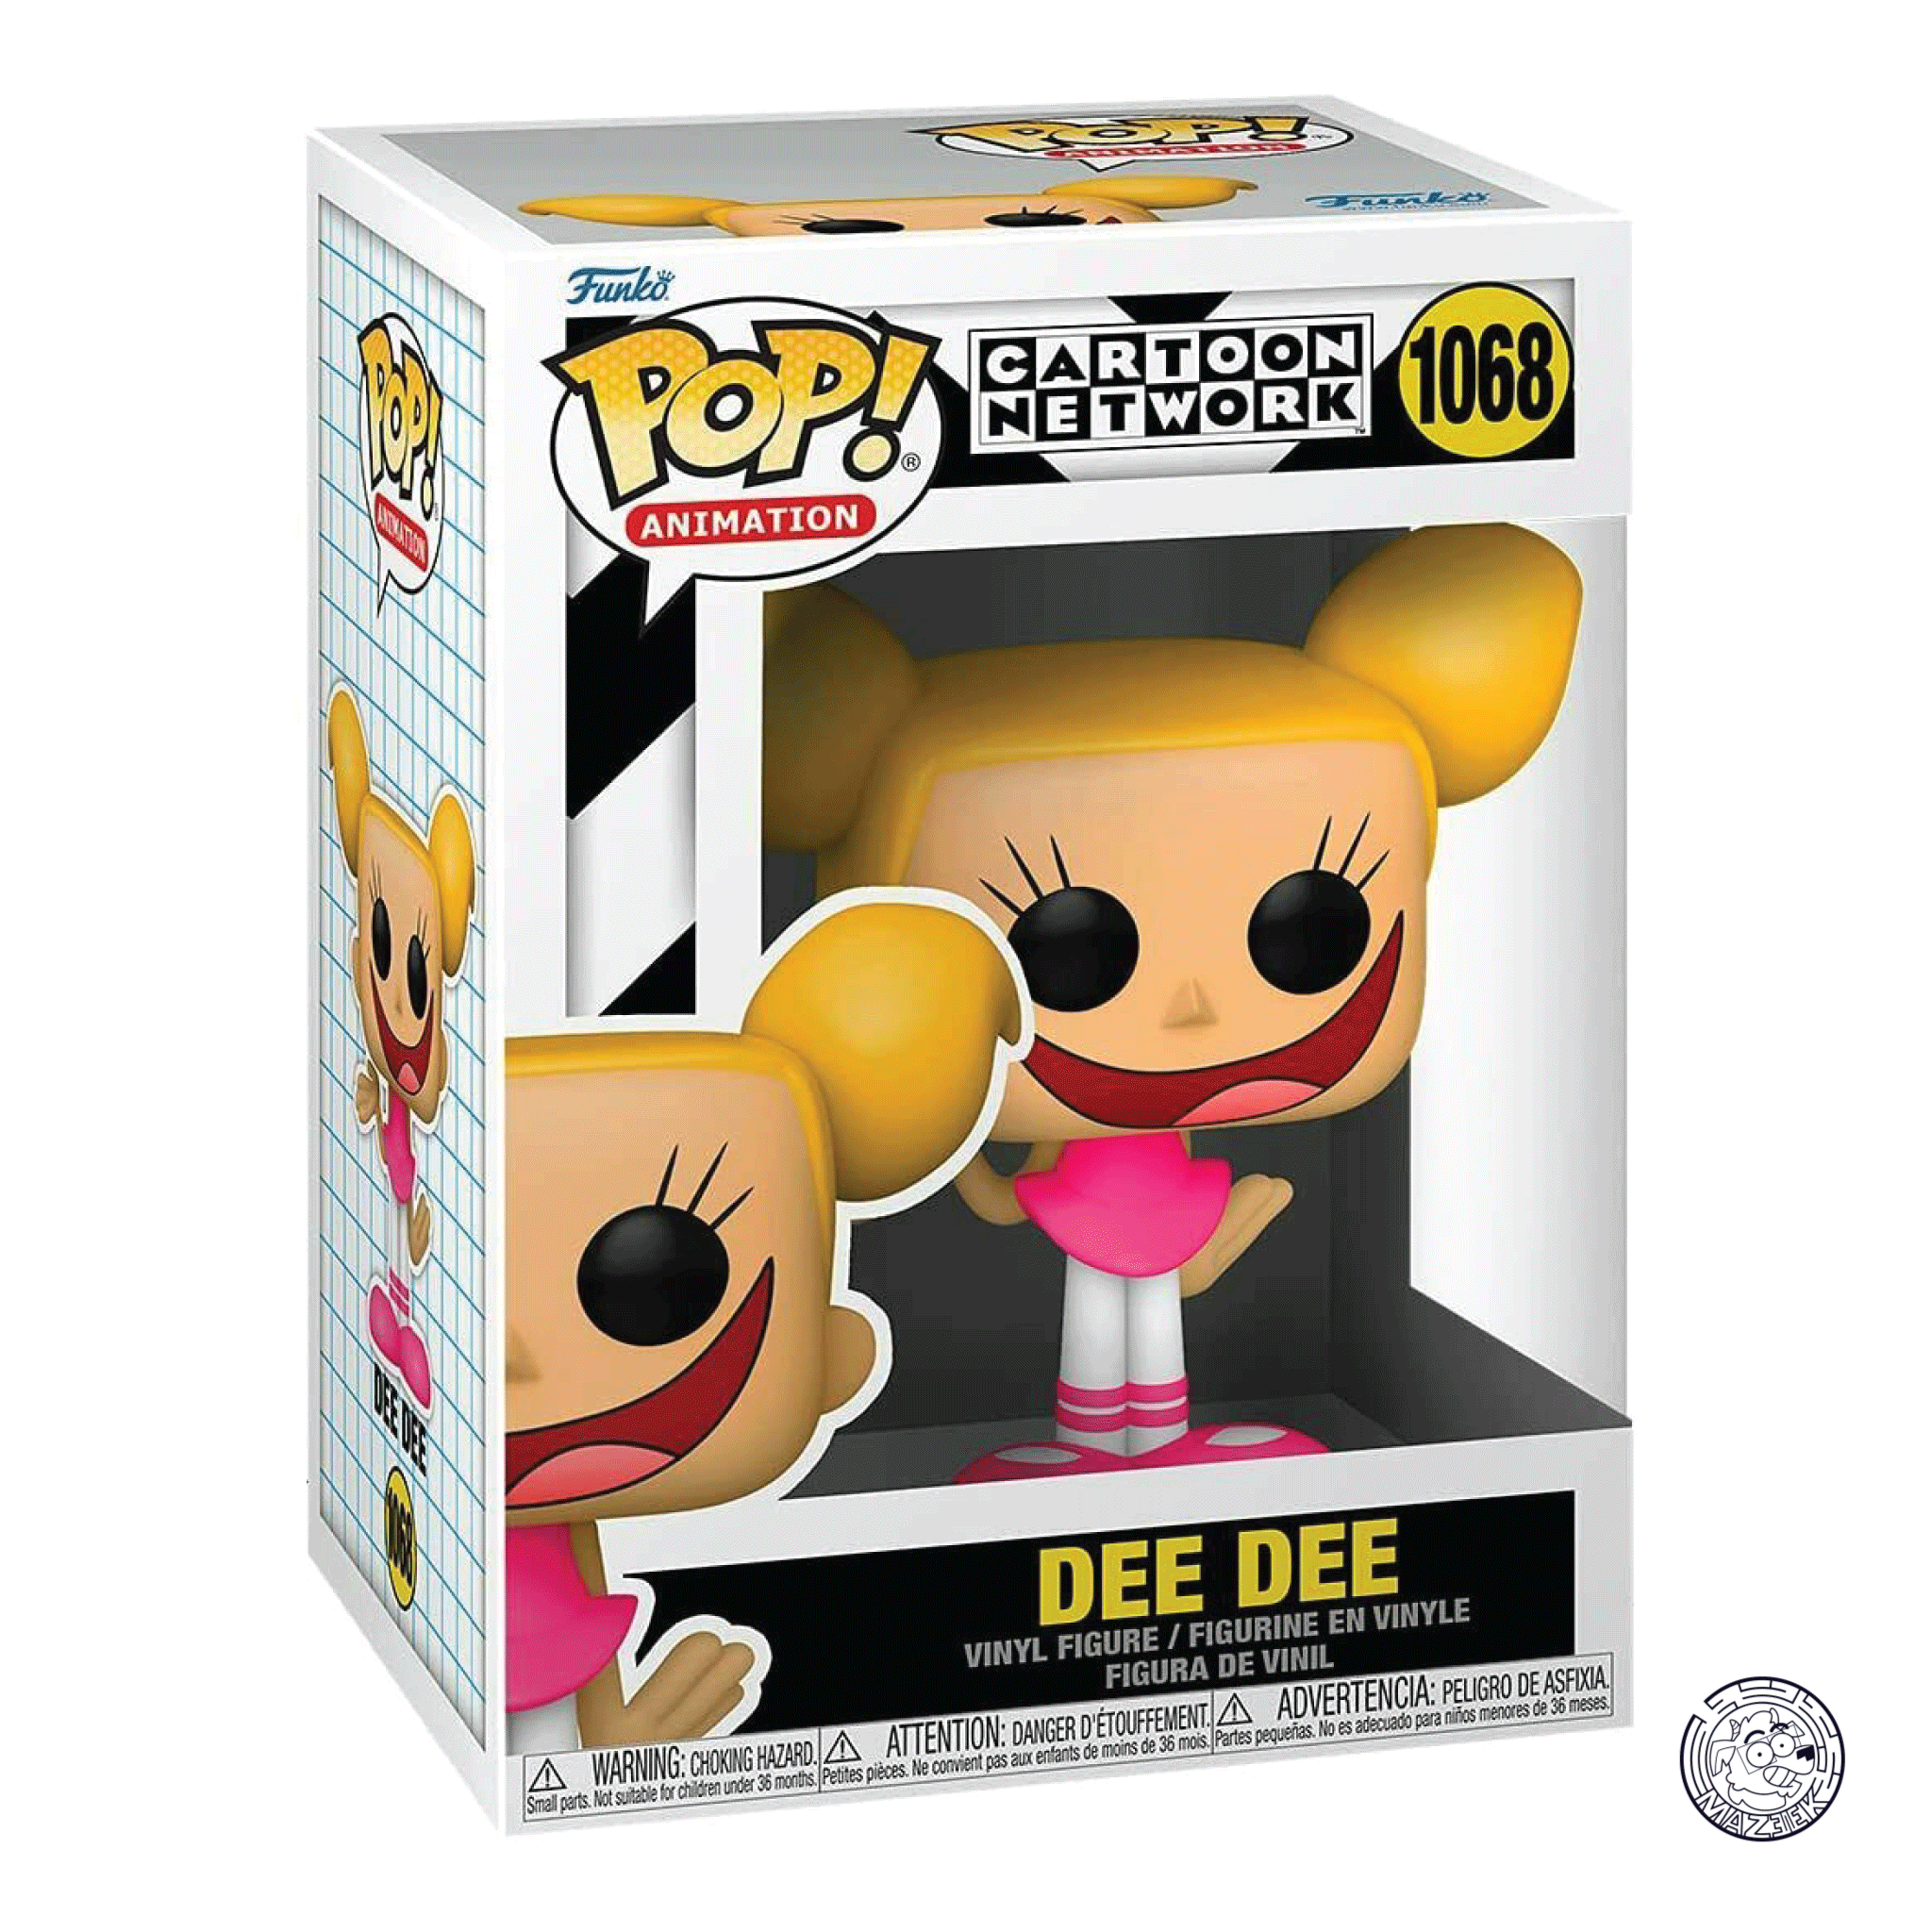 Funko POP! Cartoon Network: Dee Dee 1068